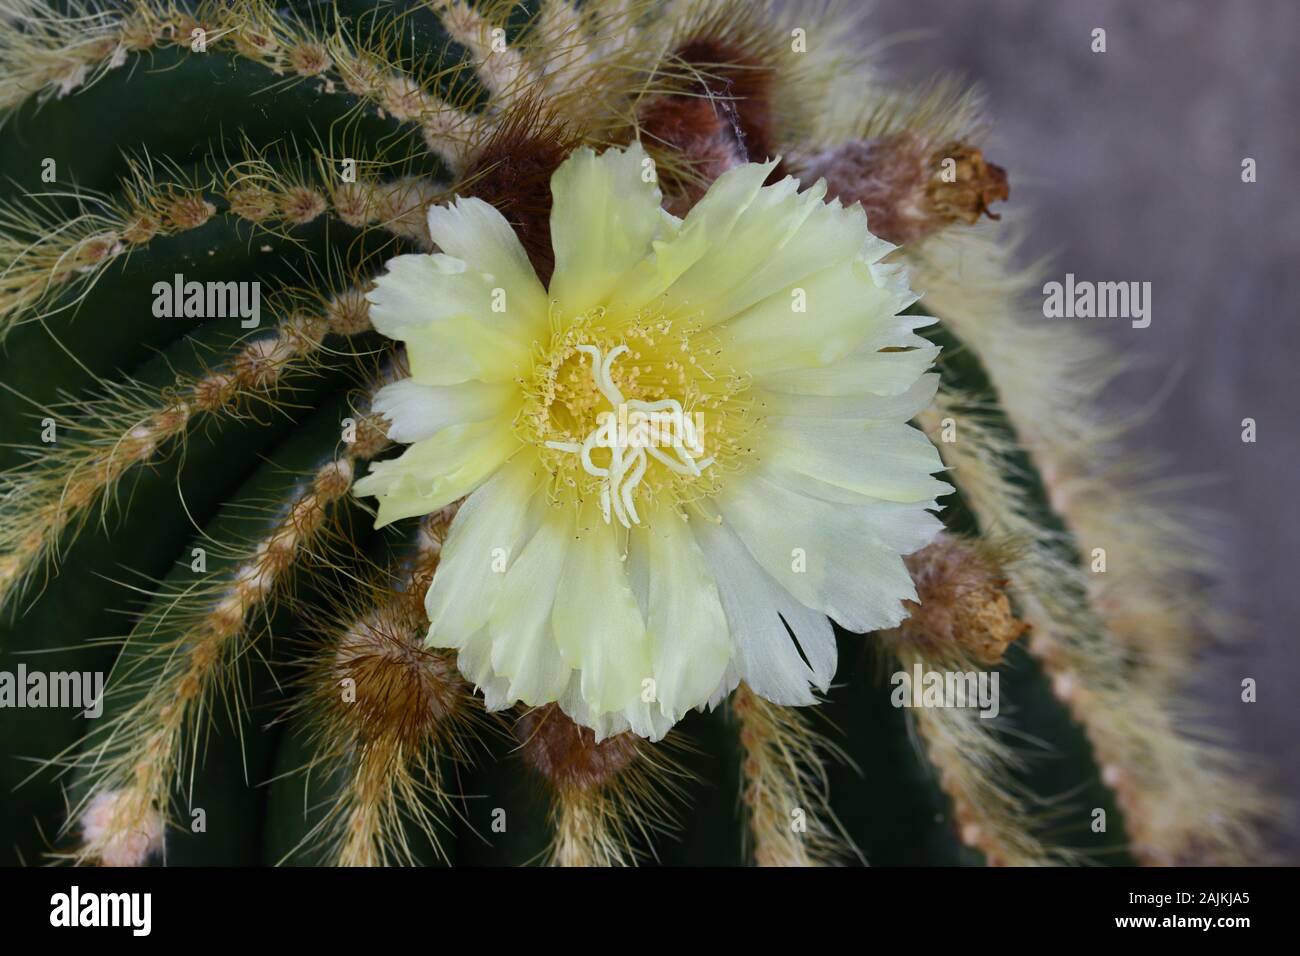 Parodia leninghausii è una specie di South American cactus si trovano comunemente come un houseplant. Nomi comuni includono la sfera di limone cactus, palla dorata cactus Foto Stock